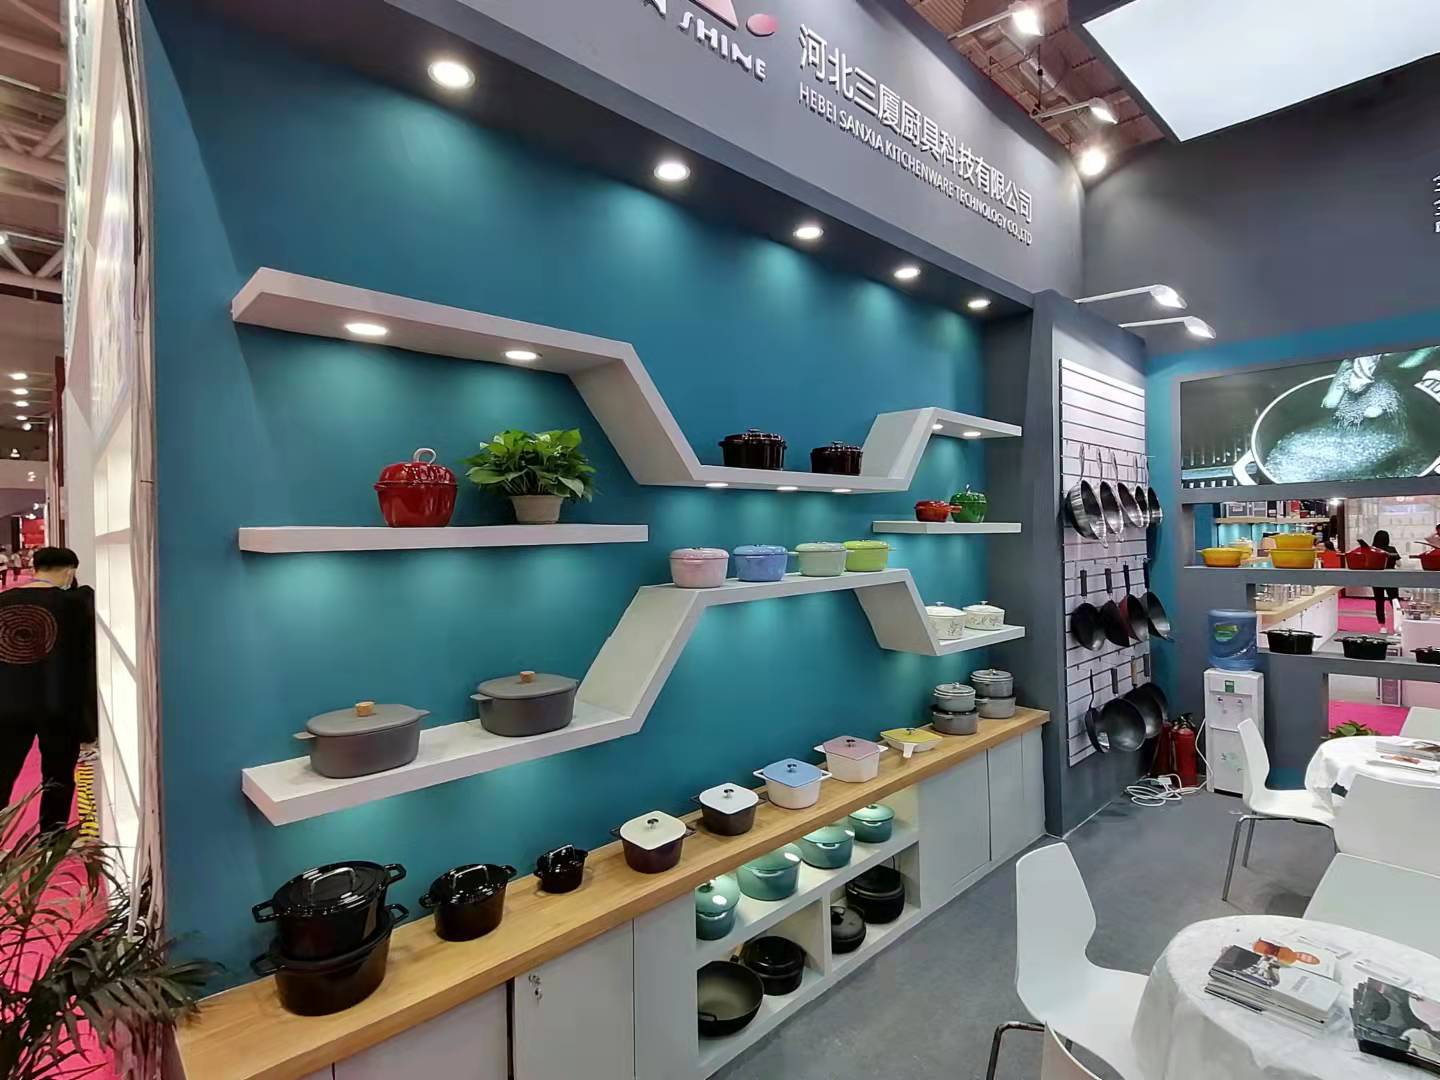 Uno sguardo più da vicino alla "Qualità di precisione", Sanxia Kitchenware alla Shenzhen Gift Fair 2021!